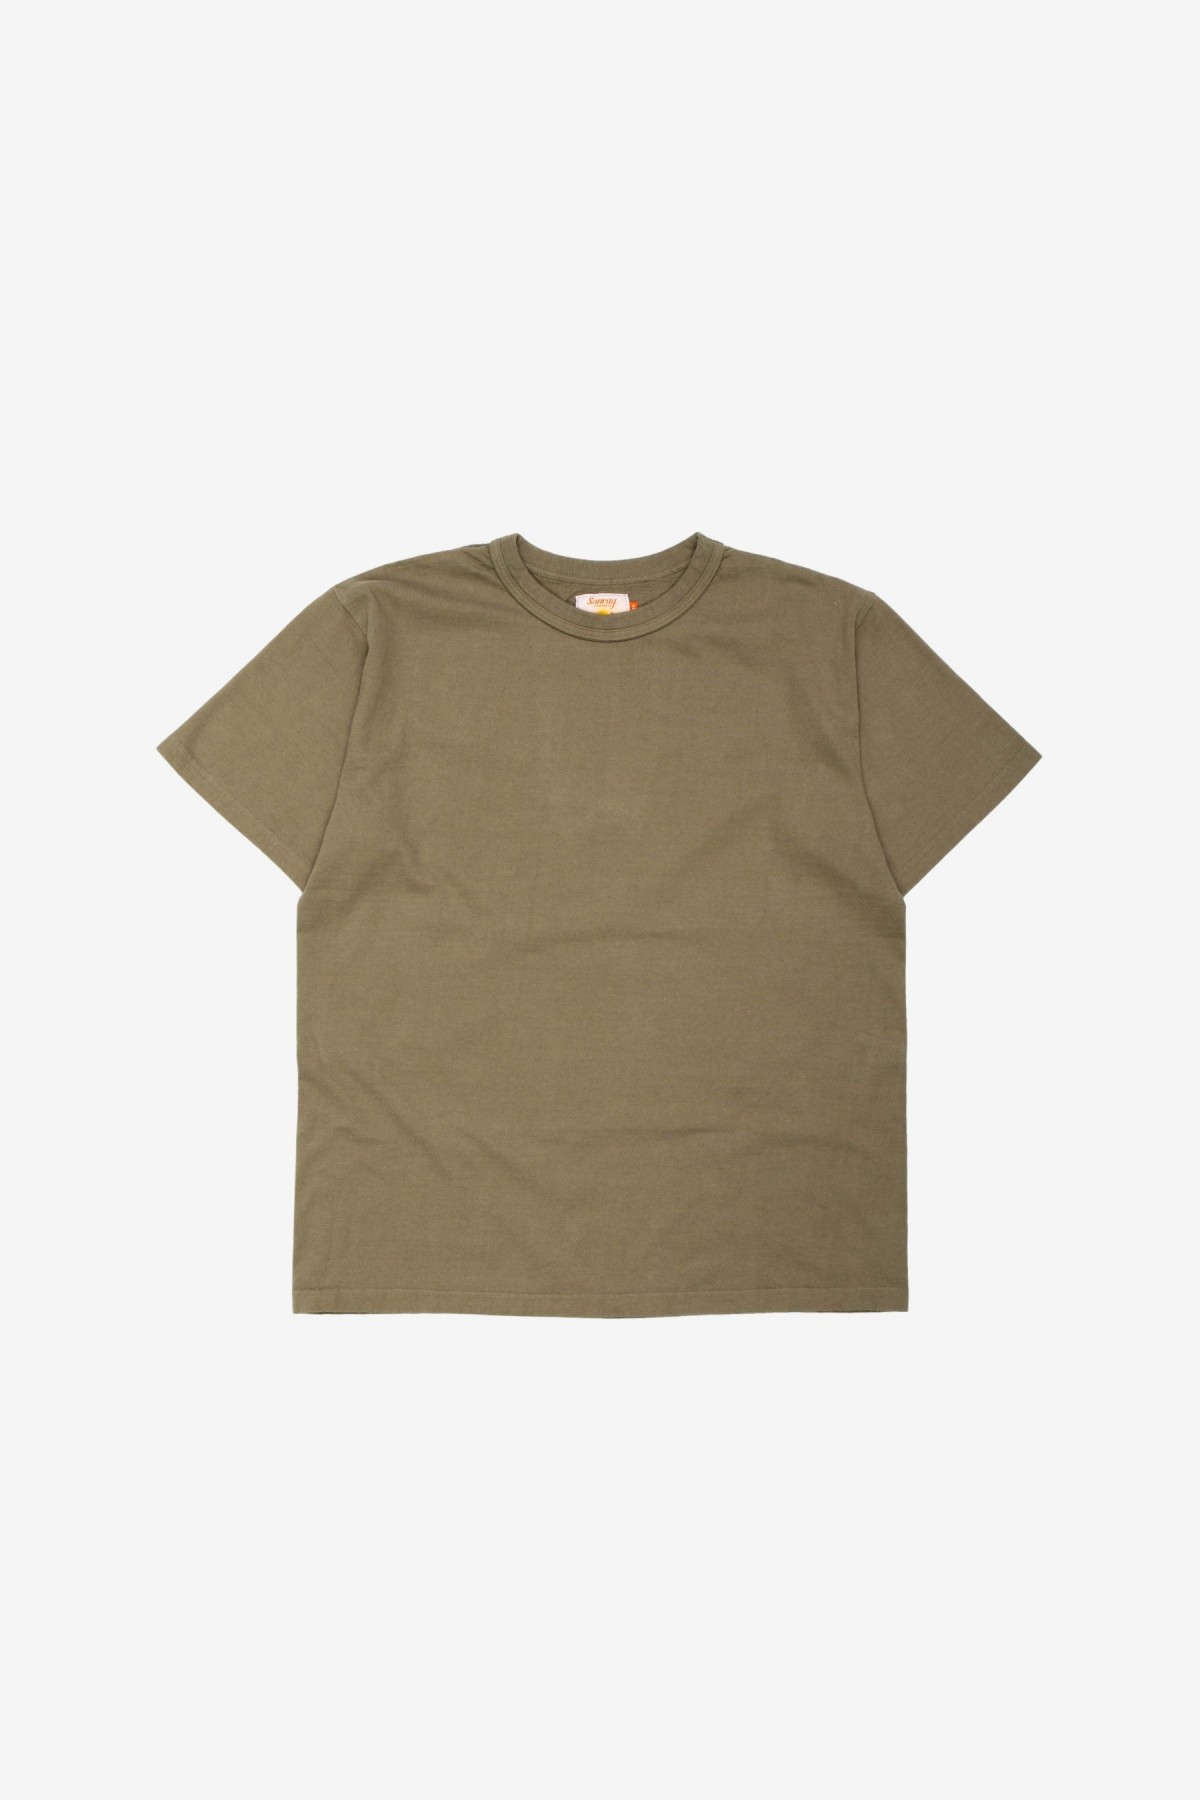 Sunray Sportswear Makaha Short Sleeve T-Shirt in Deep Lichen